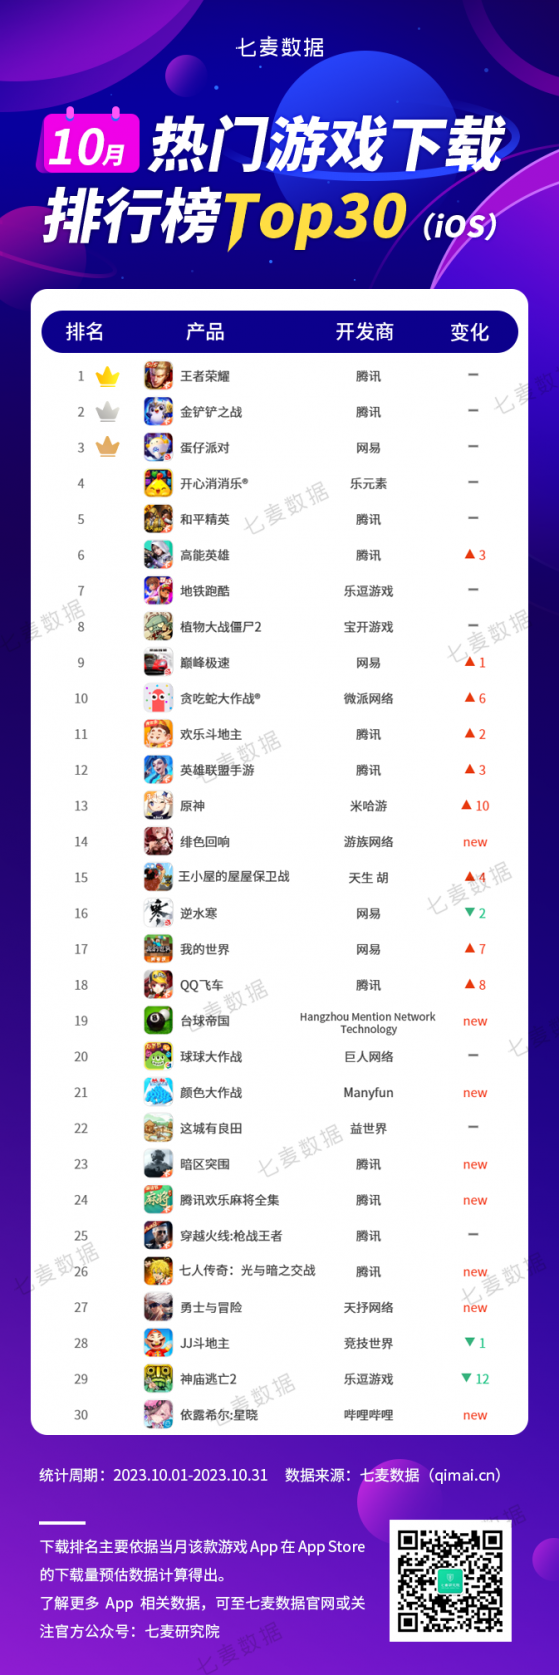 七麥研究院：騰訊(00700)旗下“王者榮耀”位居10月熱門遊戲下載榜Top30榜首